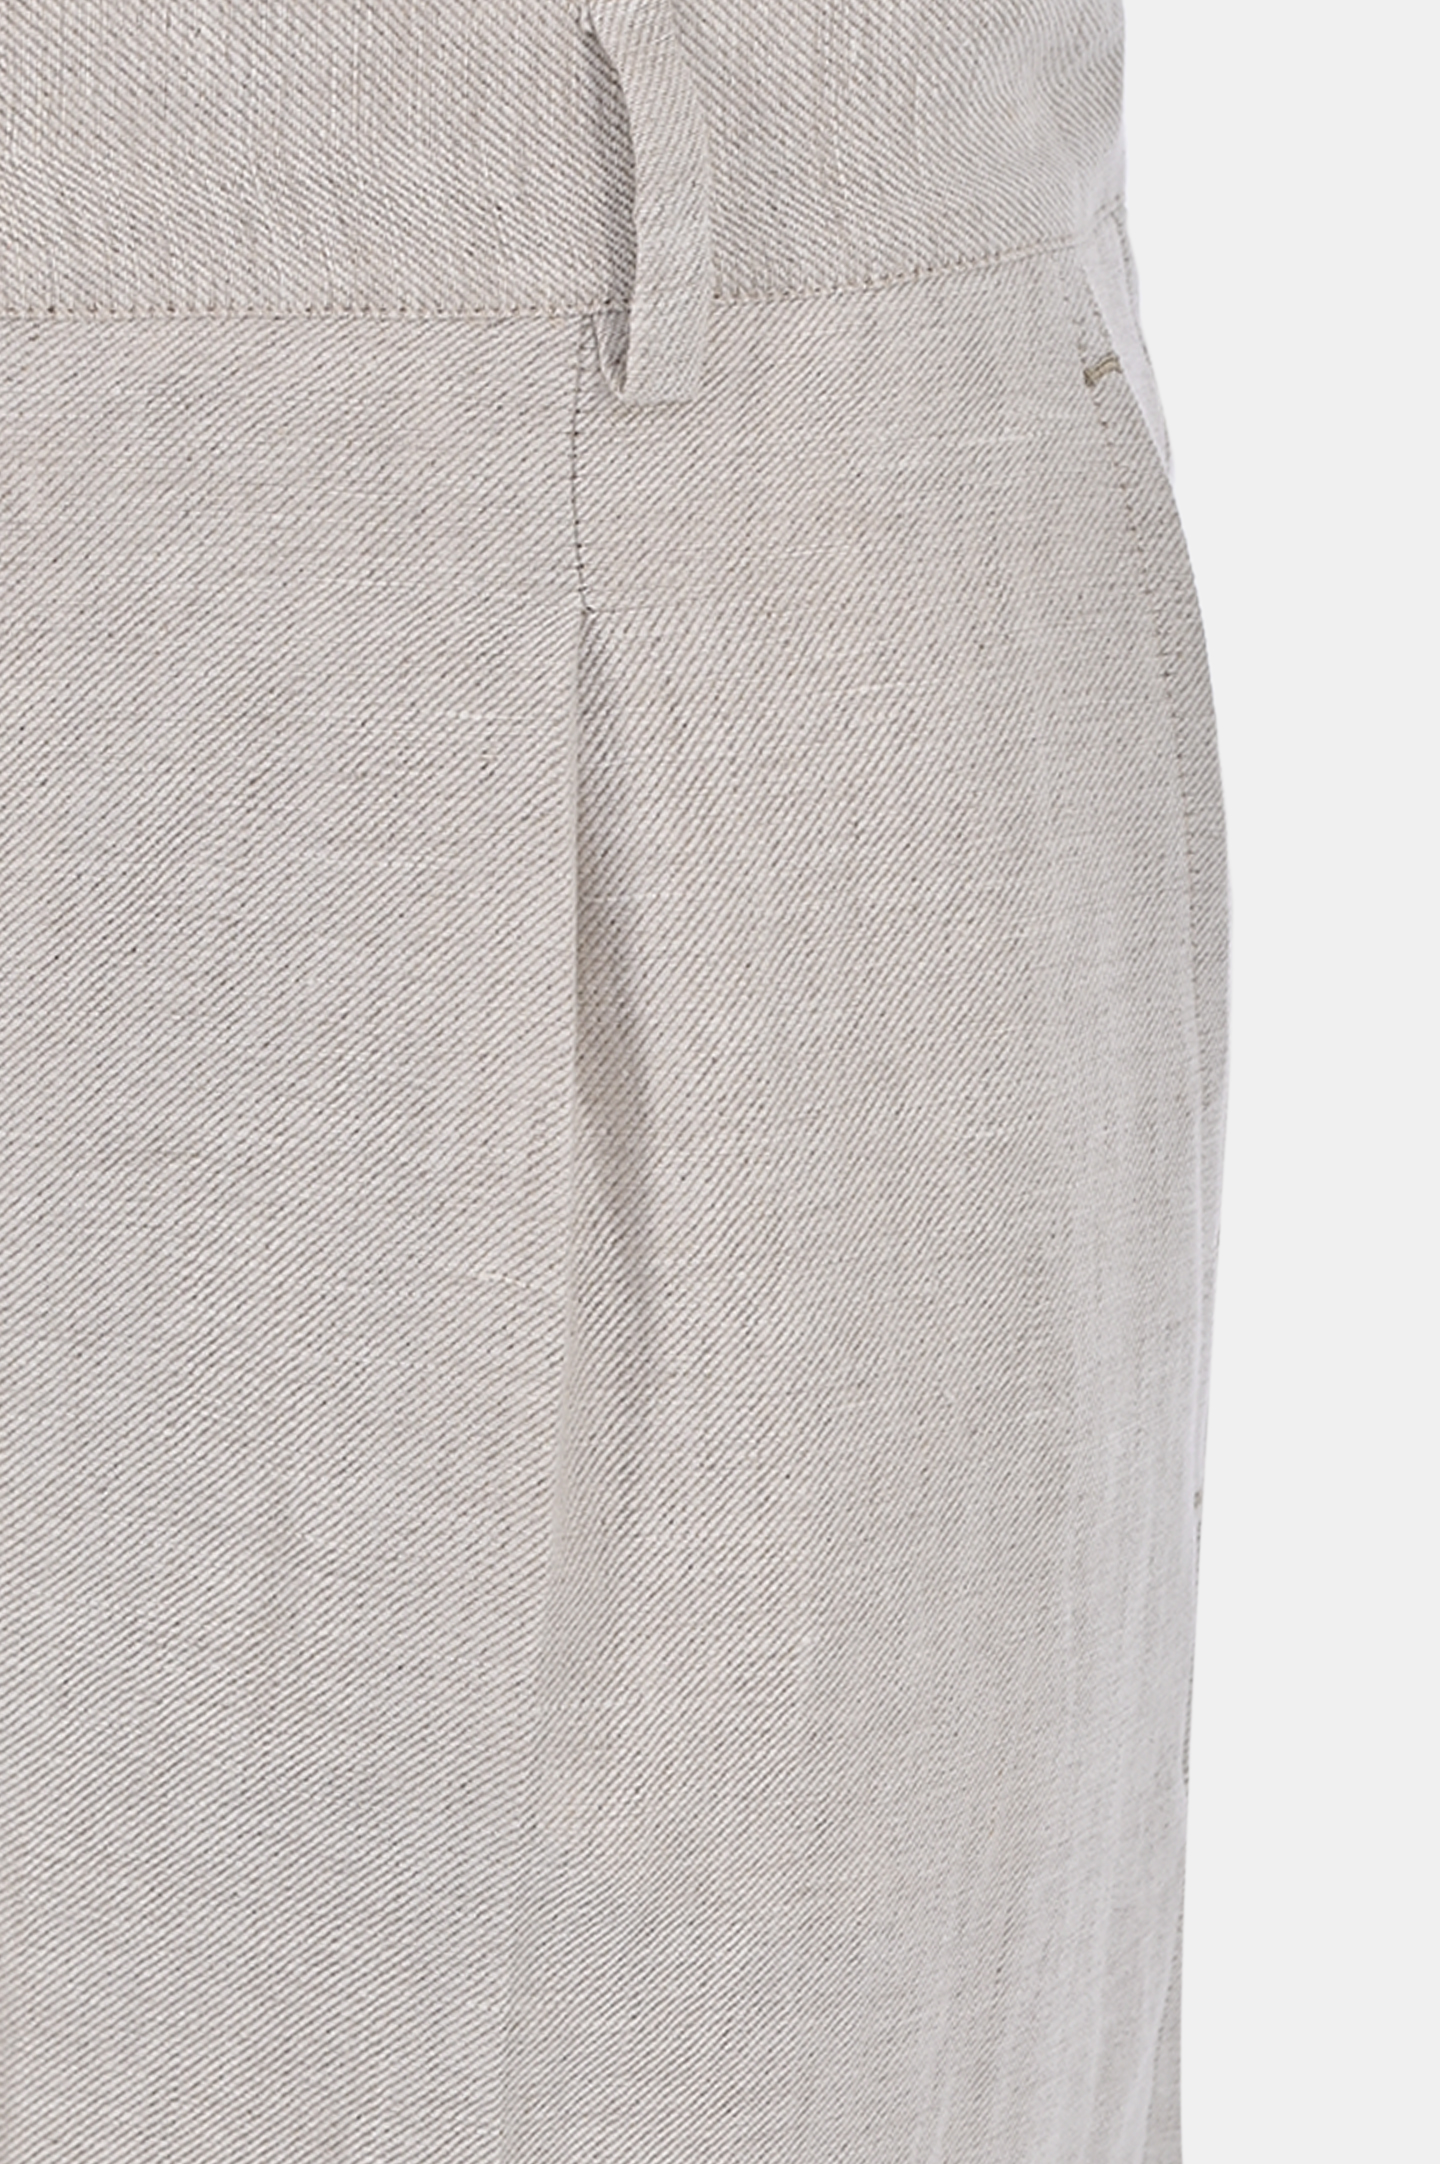 Льняные брюки со стрелками KITON D55113H084420, цвет: Светло-бежевый, Женский